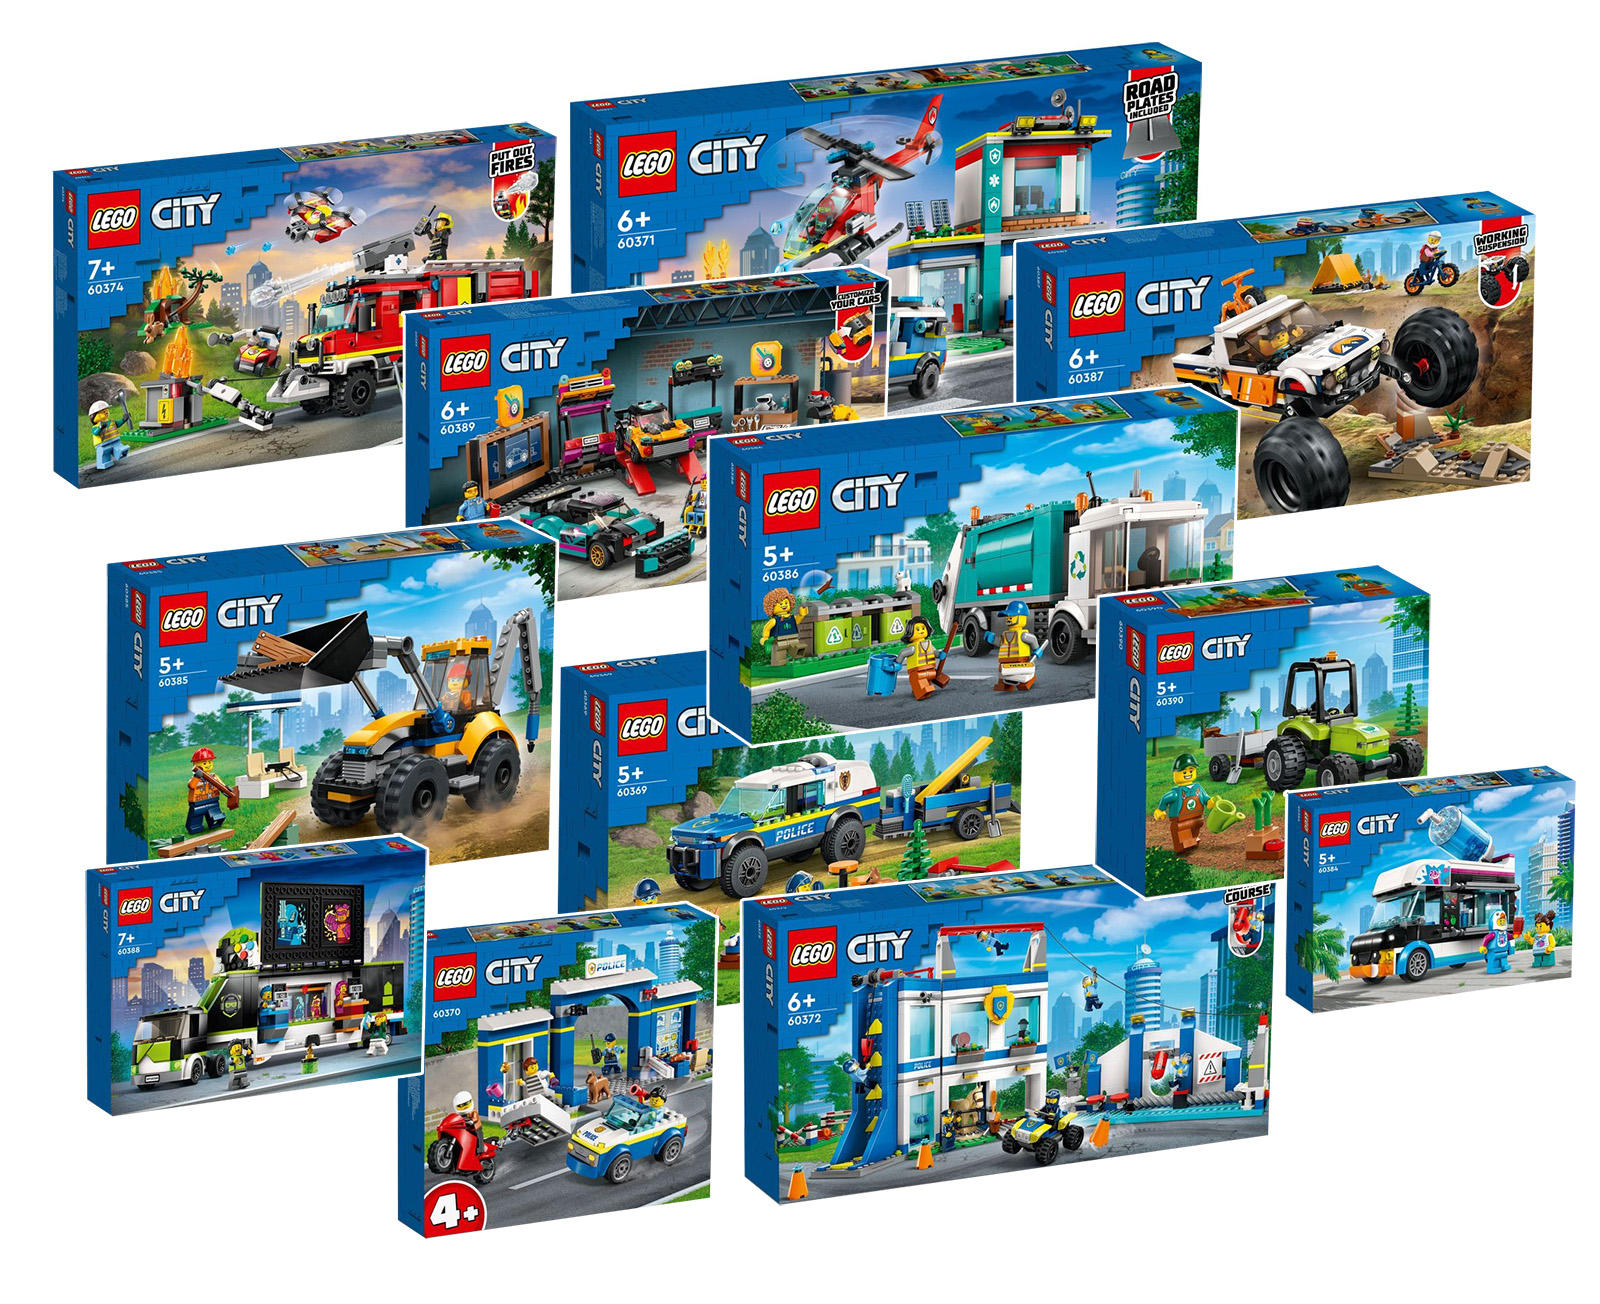 Noutăți LEGO CITY pentru prima jumătate a anului 1: imaginile oficiale sunt disponibile